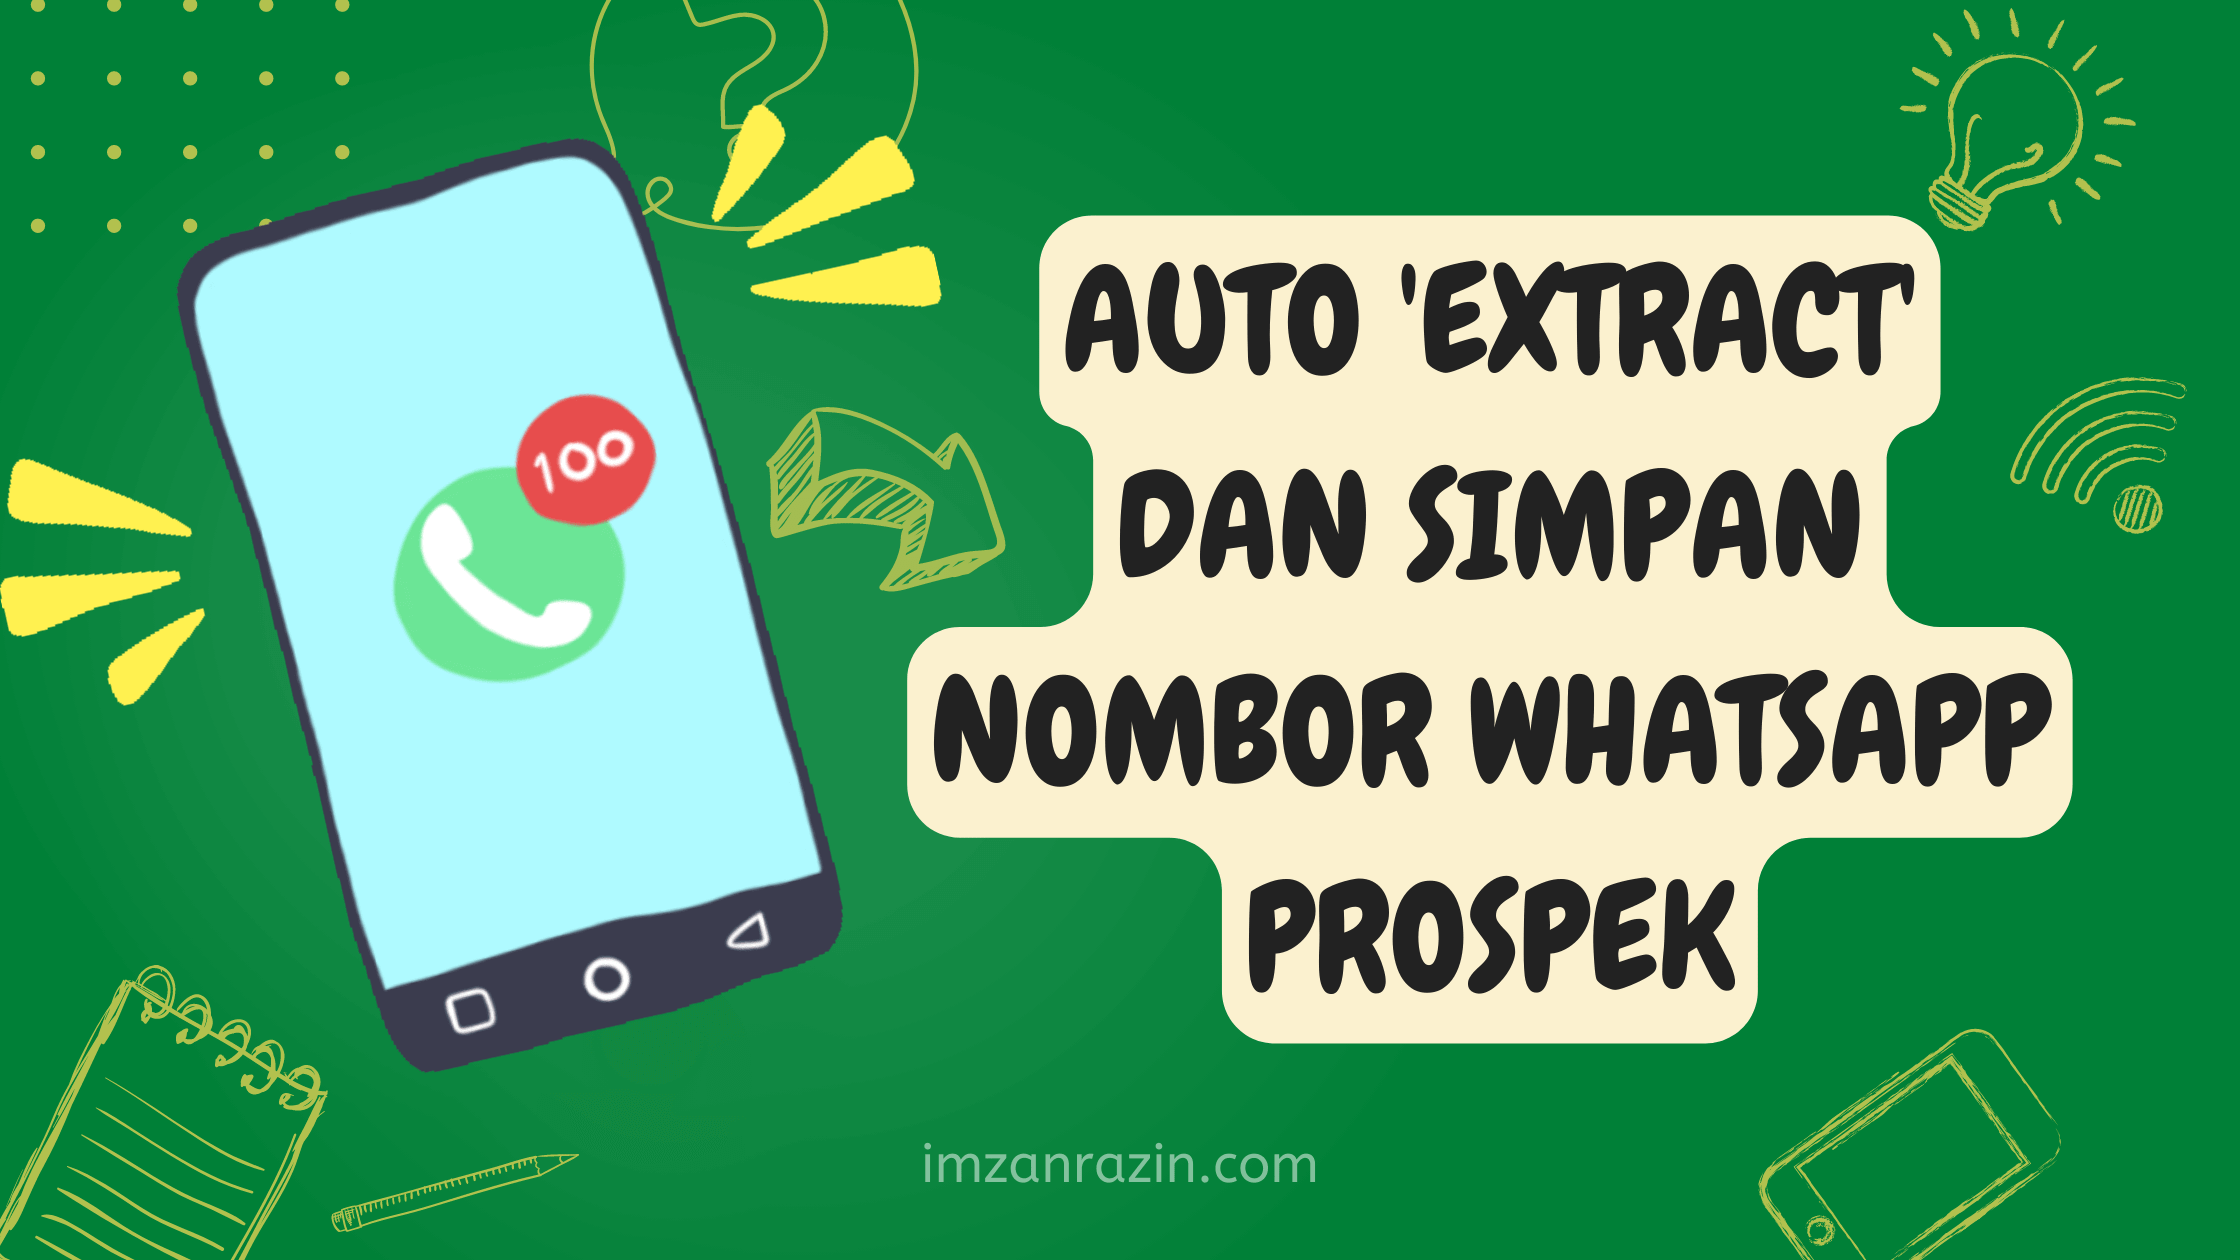 Cara Mudah Auto ‘Extract’ Dan Simpan Nombor Whatsapp Prospek